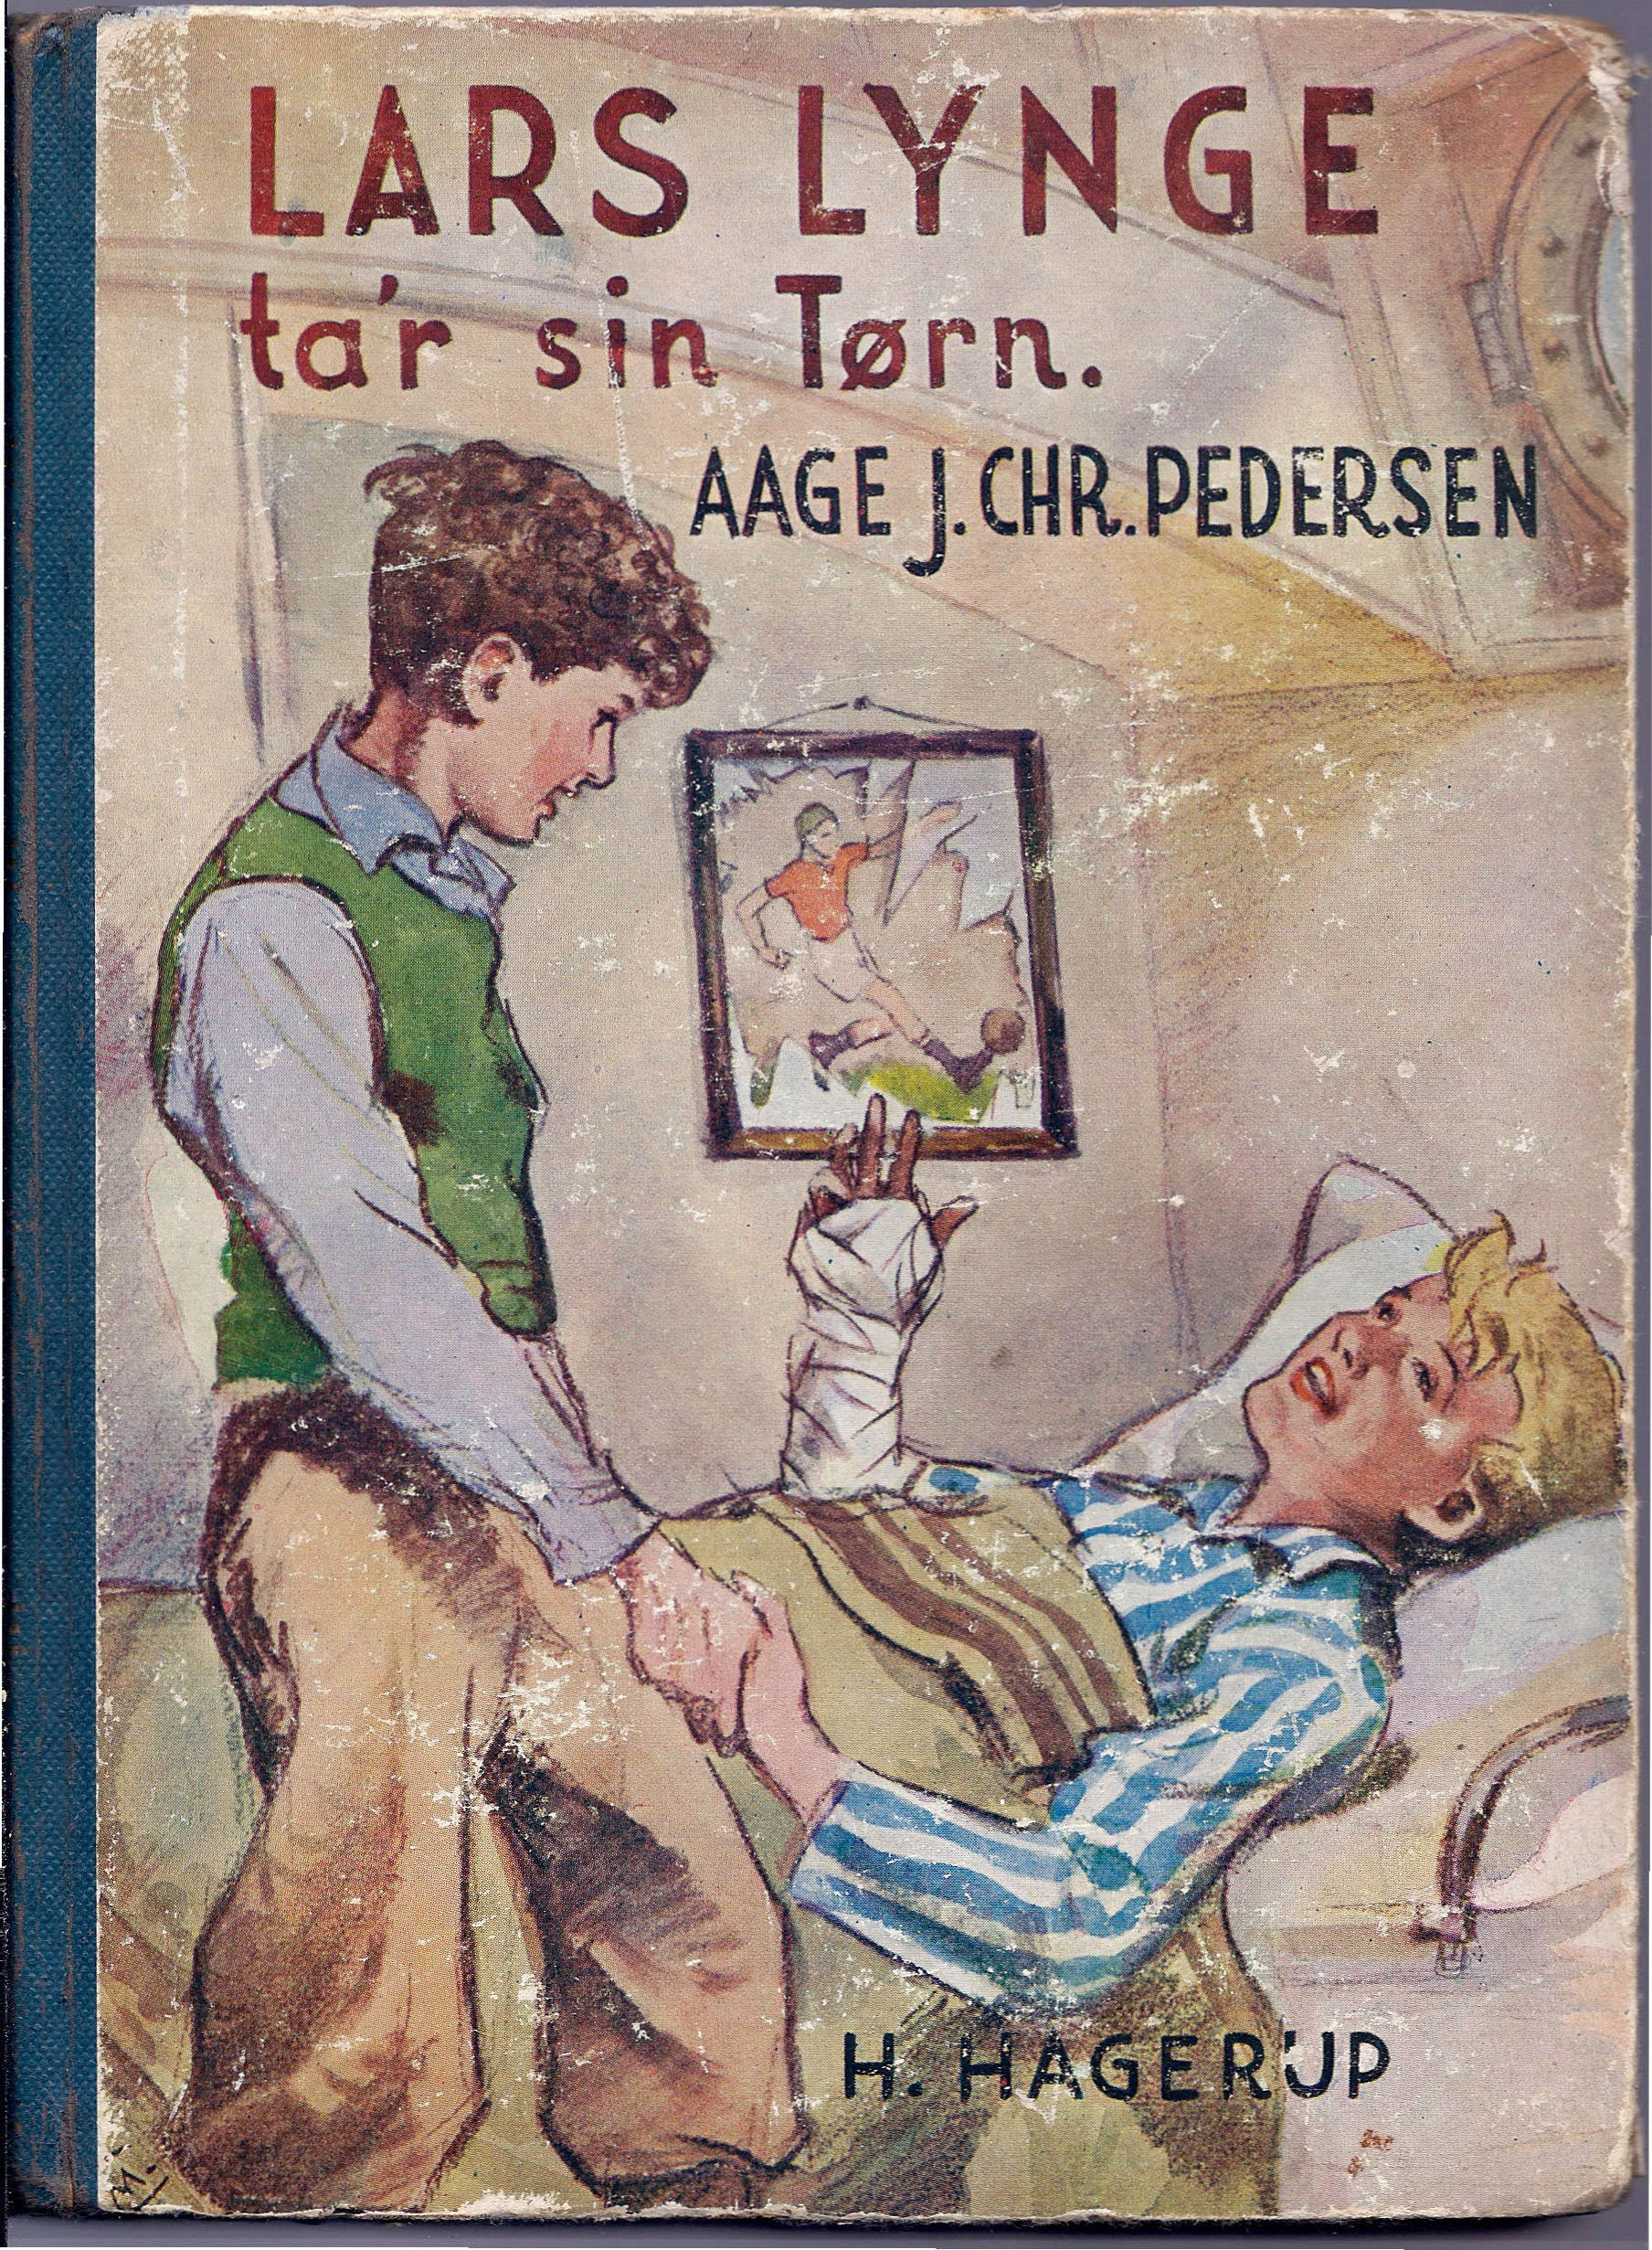 Lars Lynge ta'r sin tørn - Aage J Pedersen-1